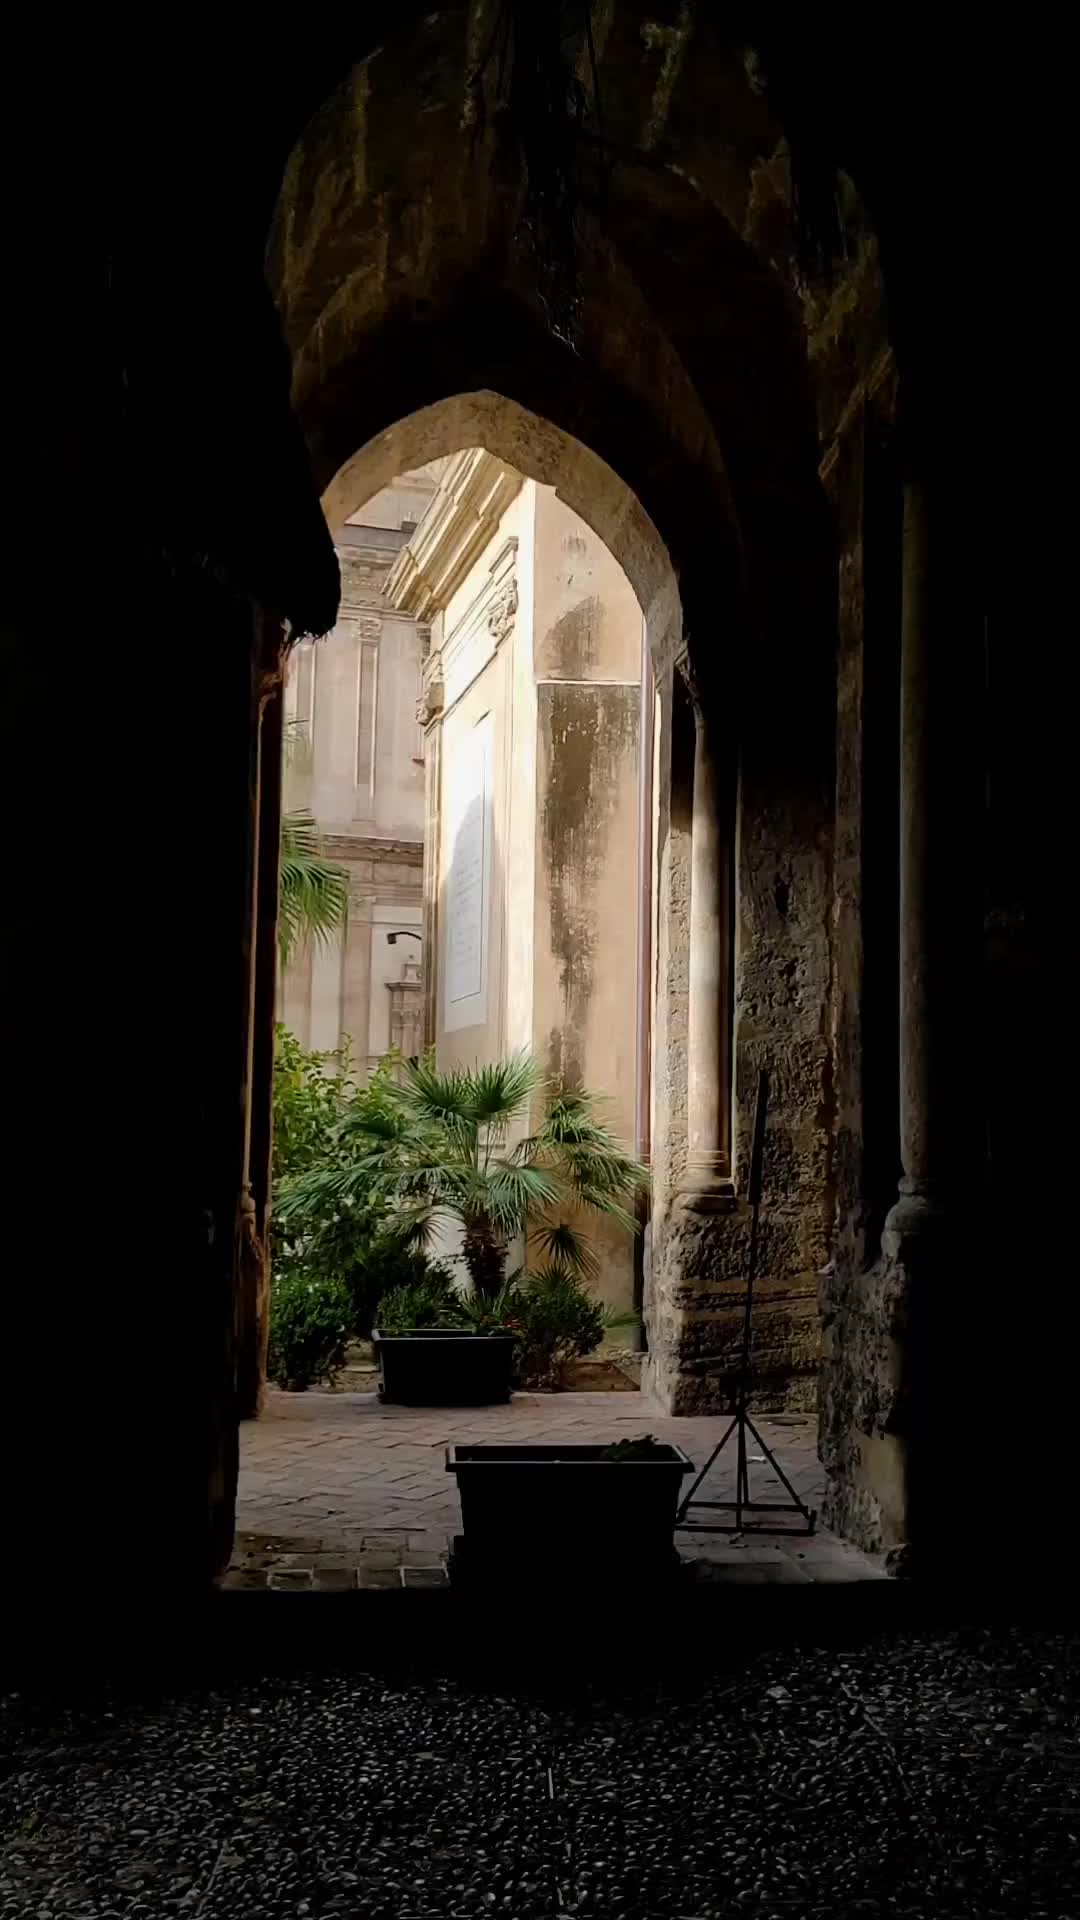 Discover Chiesa Santa Maria dell'Ammiraglio, Palermo